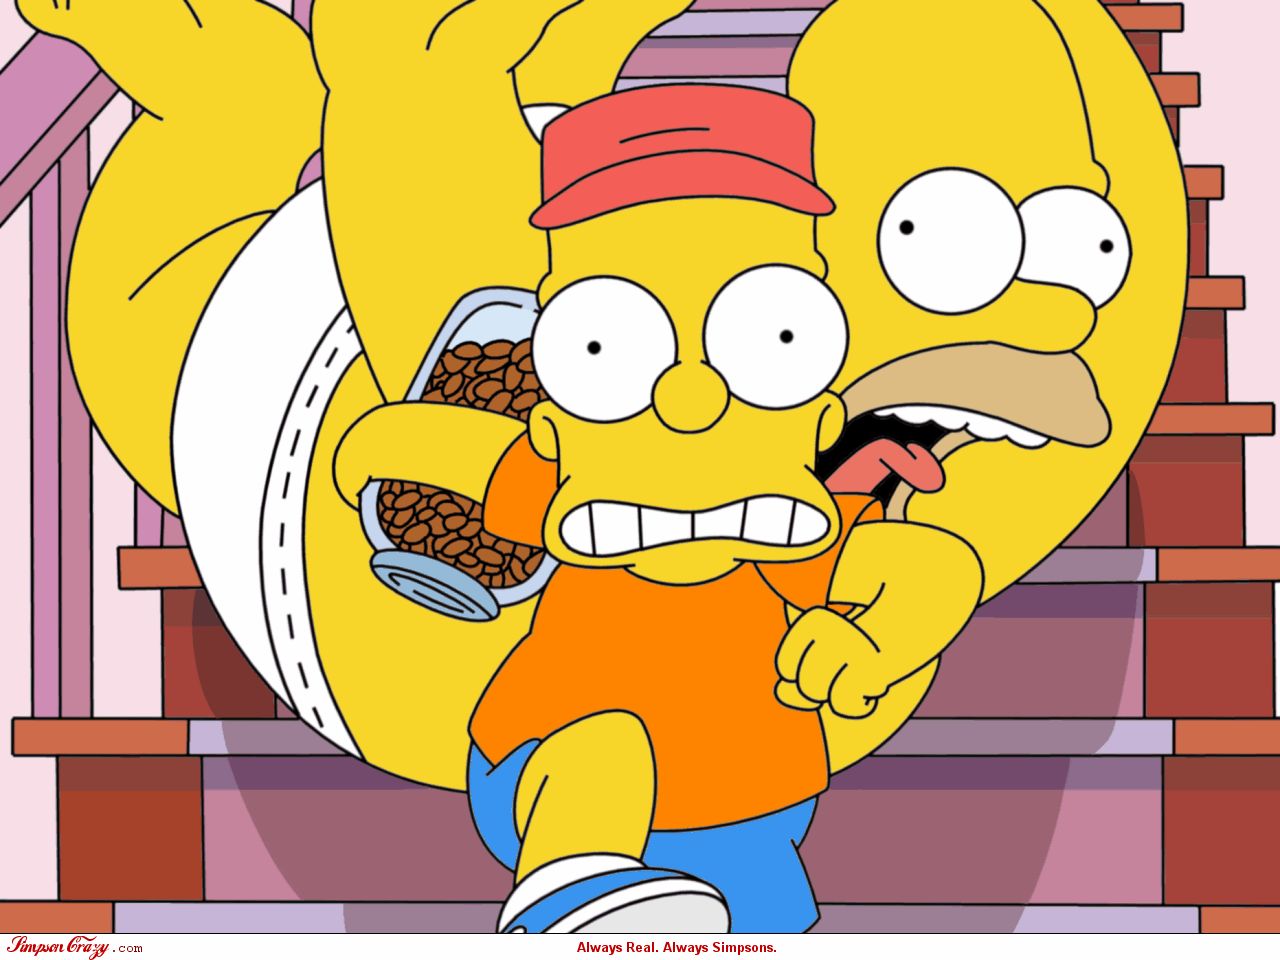 Handy-Wallpaper Homer Simpson, Die Simpsons, Fernsehserien, Bart Simpson kostenlos herunterladen.